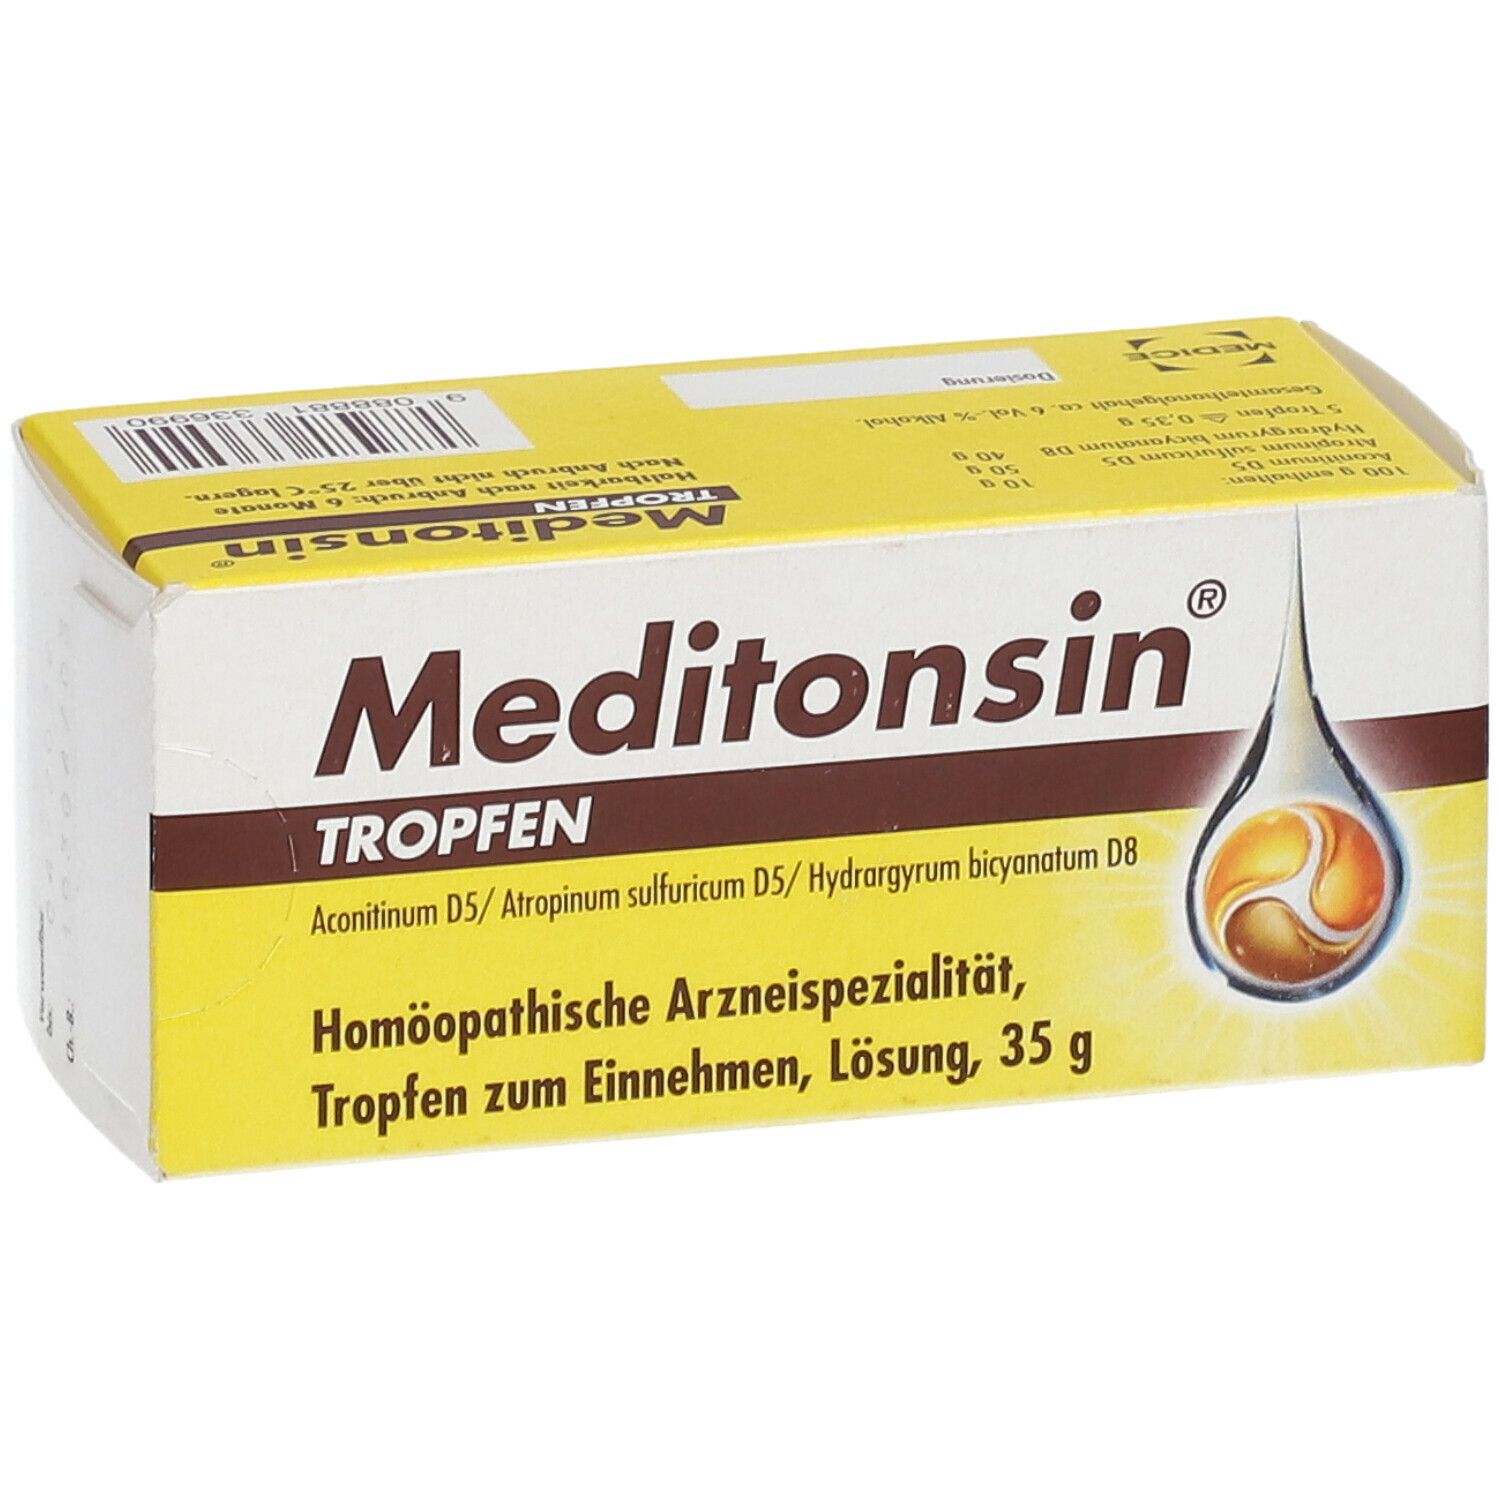 meditonsin®